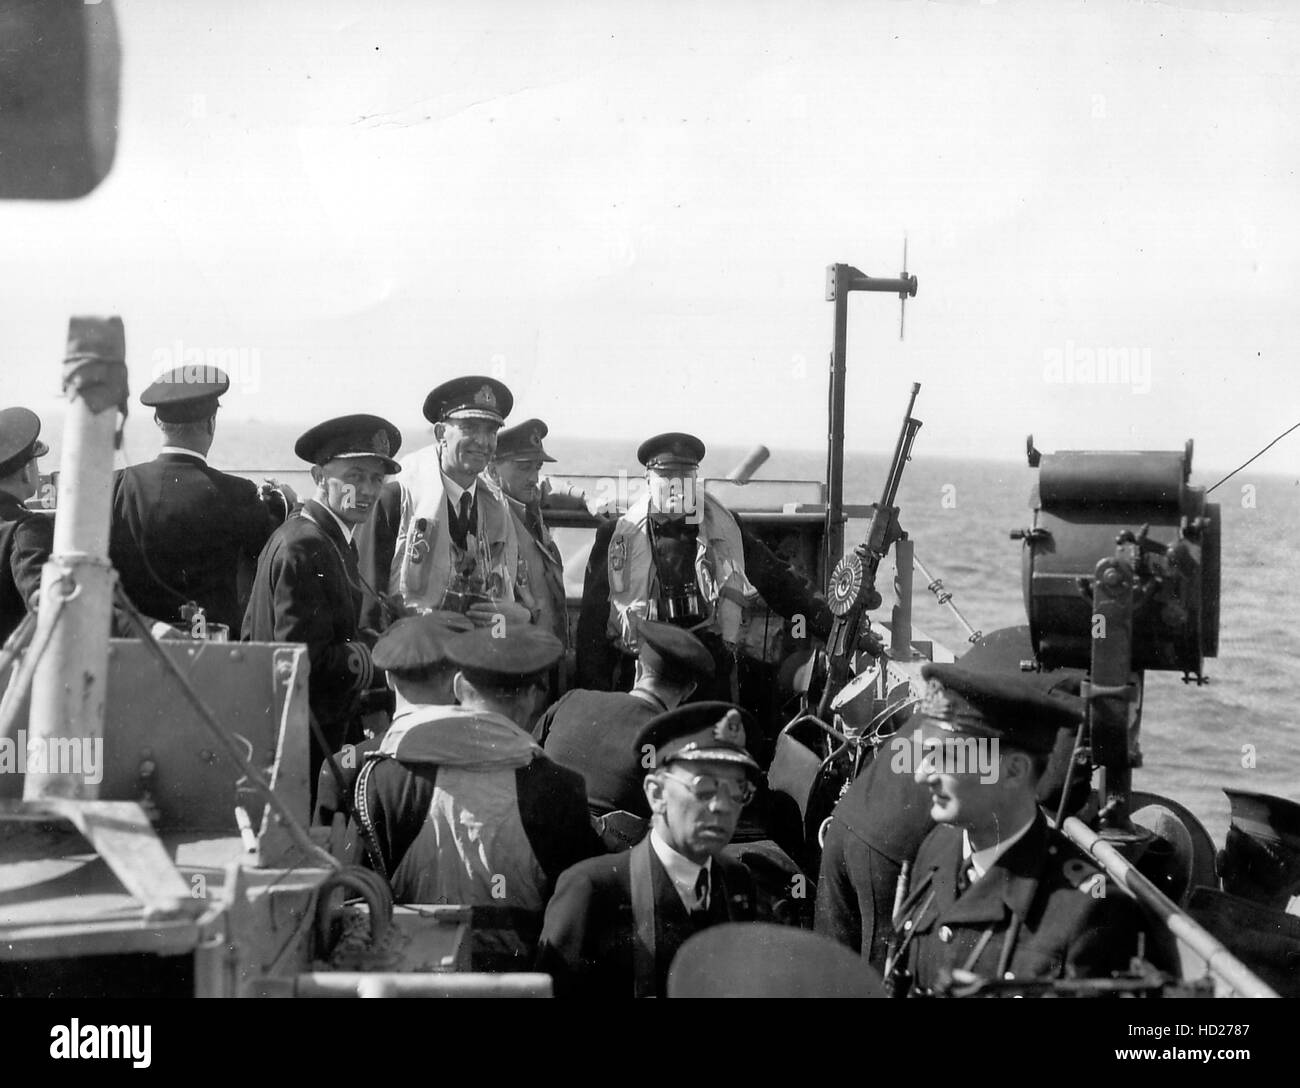 Courseulles-sur-Mer, Frankreich, 12. Juni 1944. Winston Churchill, Premierminister des Vereinigten Königreichs, an Bord eines Schiffes mit vielen Offizieren. Stockfoto